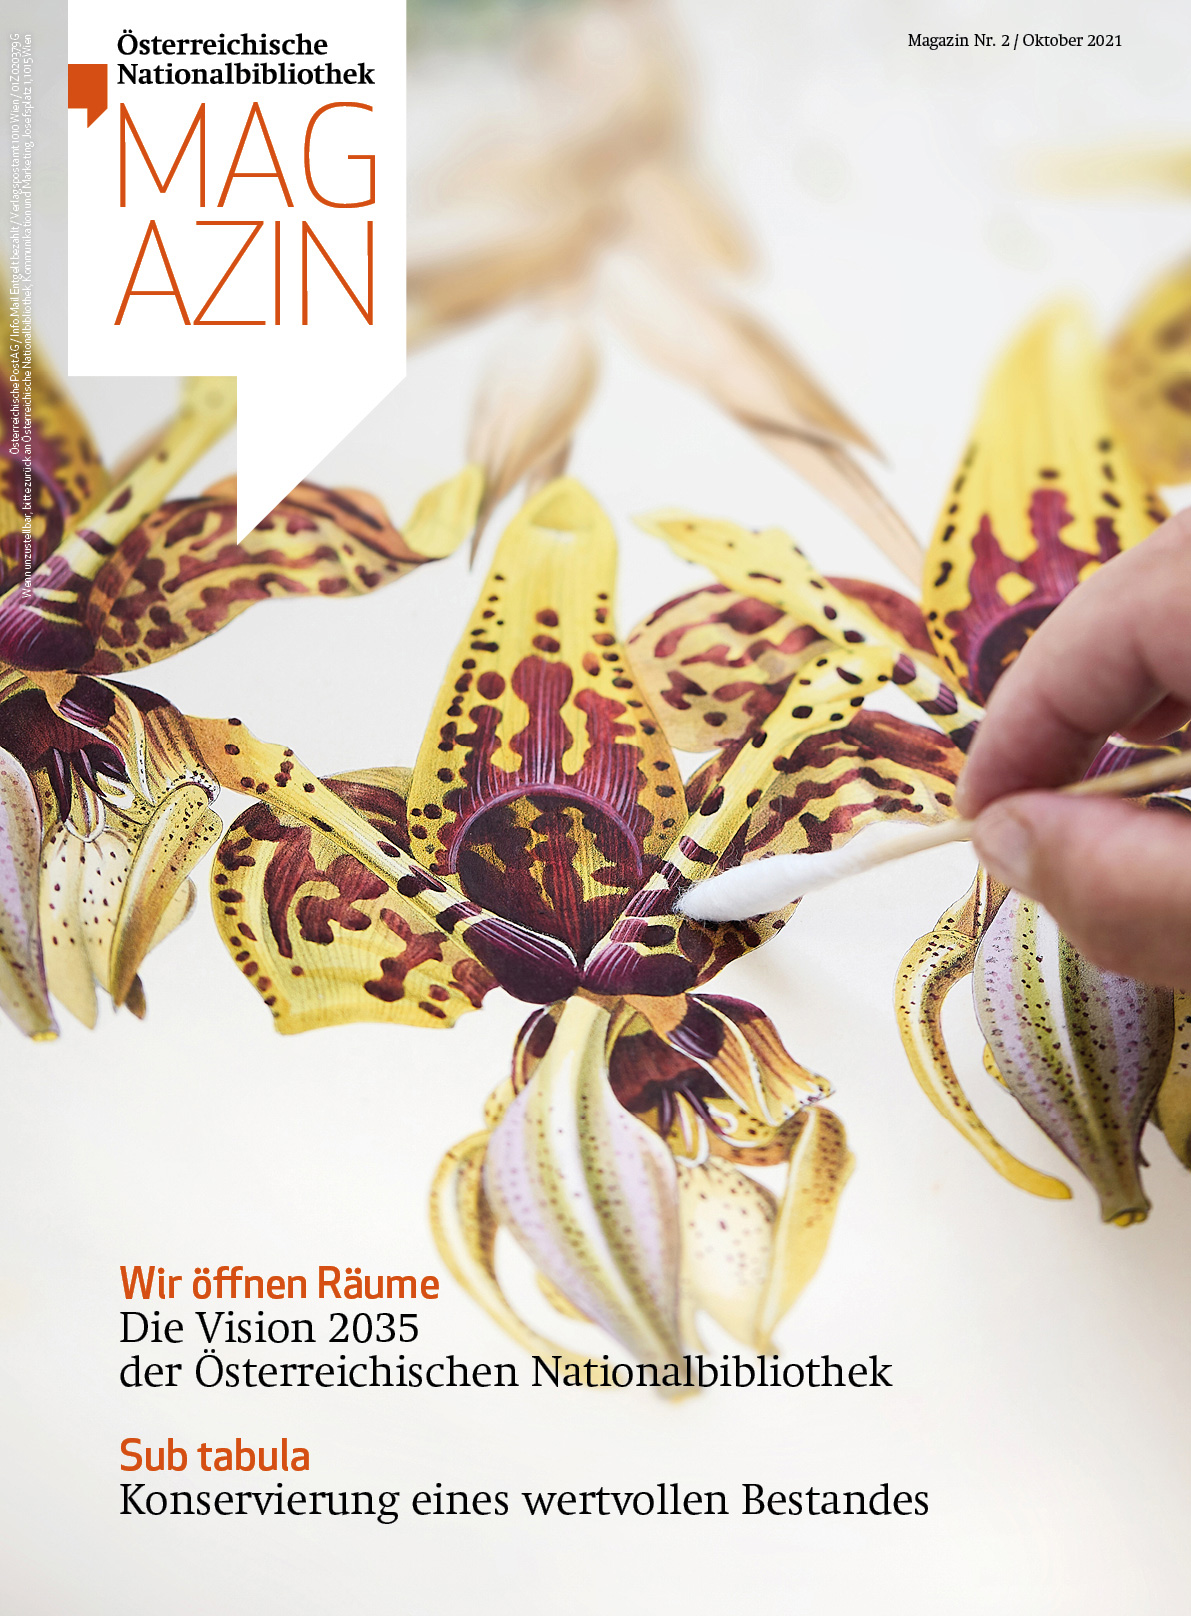 Magazincover mit dem Bild einer Orchidee, das mit einem Wattestäbchen gereinigt wird